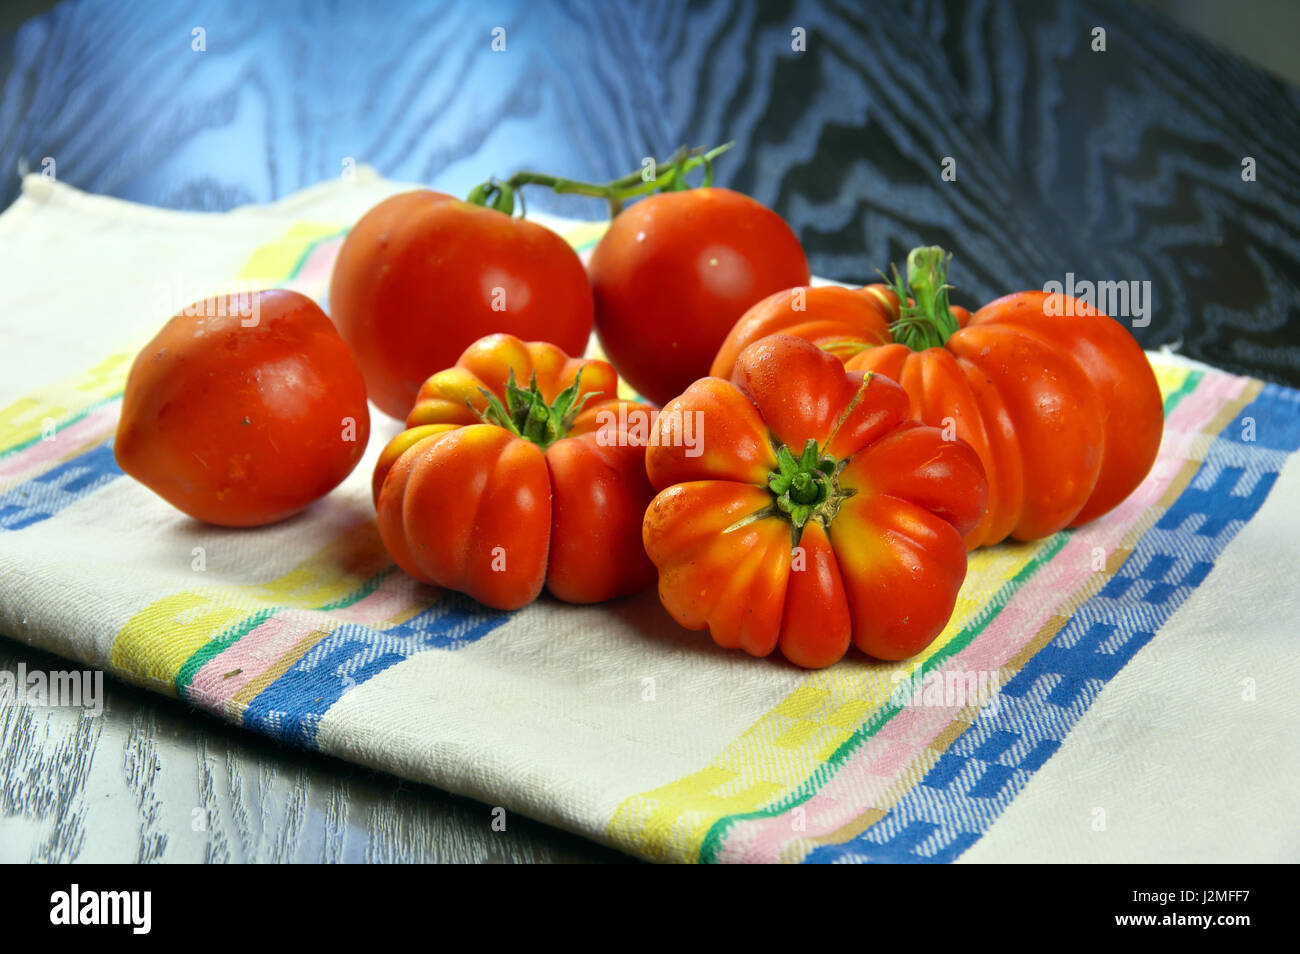 Bio Florentiner rote Tomaten - GVO-Lebensmittel gefangen aus einem kultivierten Feld in der Toskana, Italien - Studio Foto-Shooting auf einem bunten Küchentuch Stockfoto